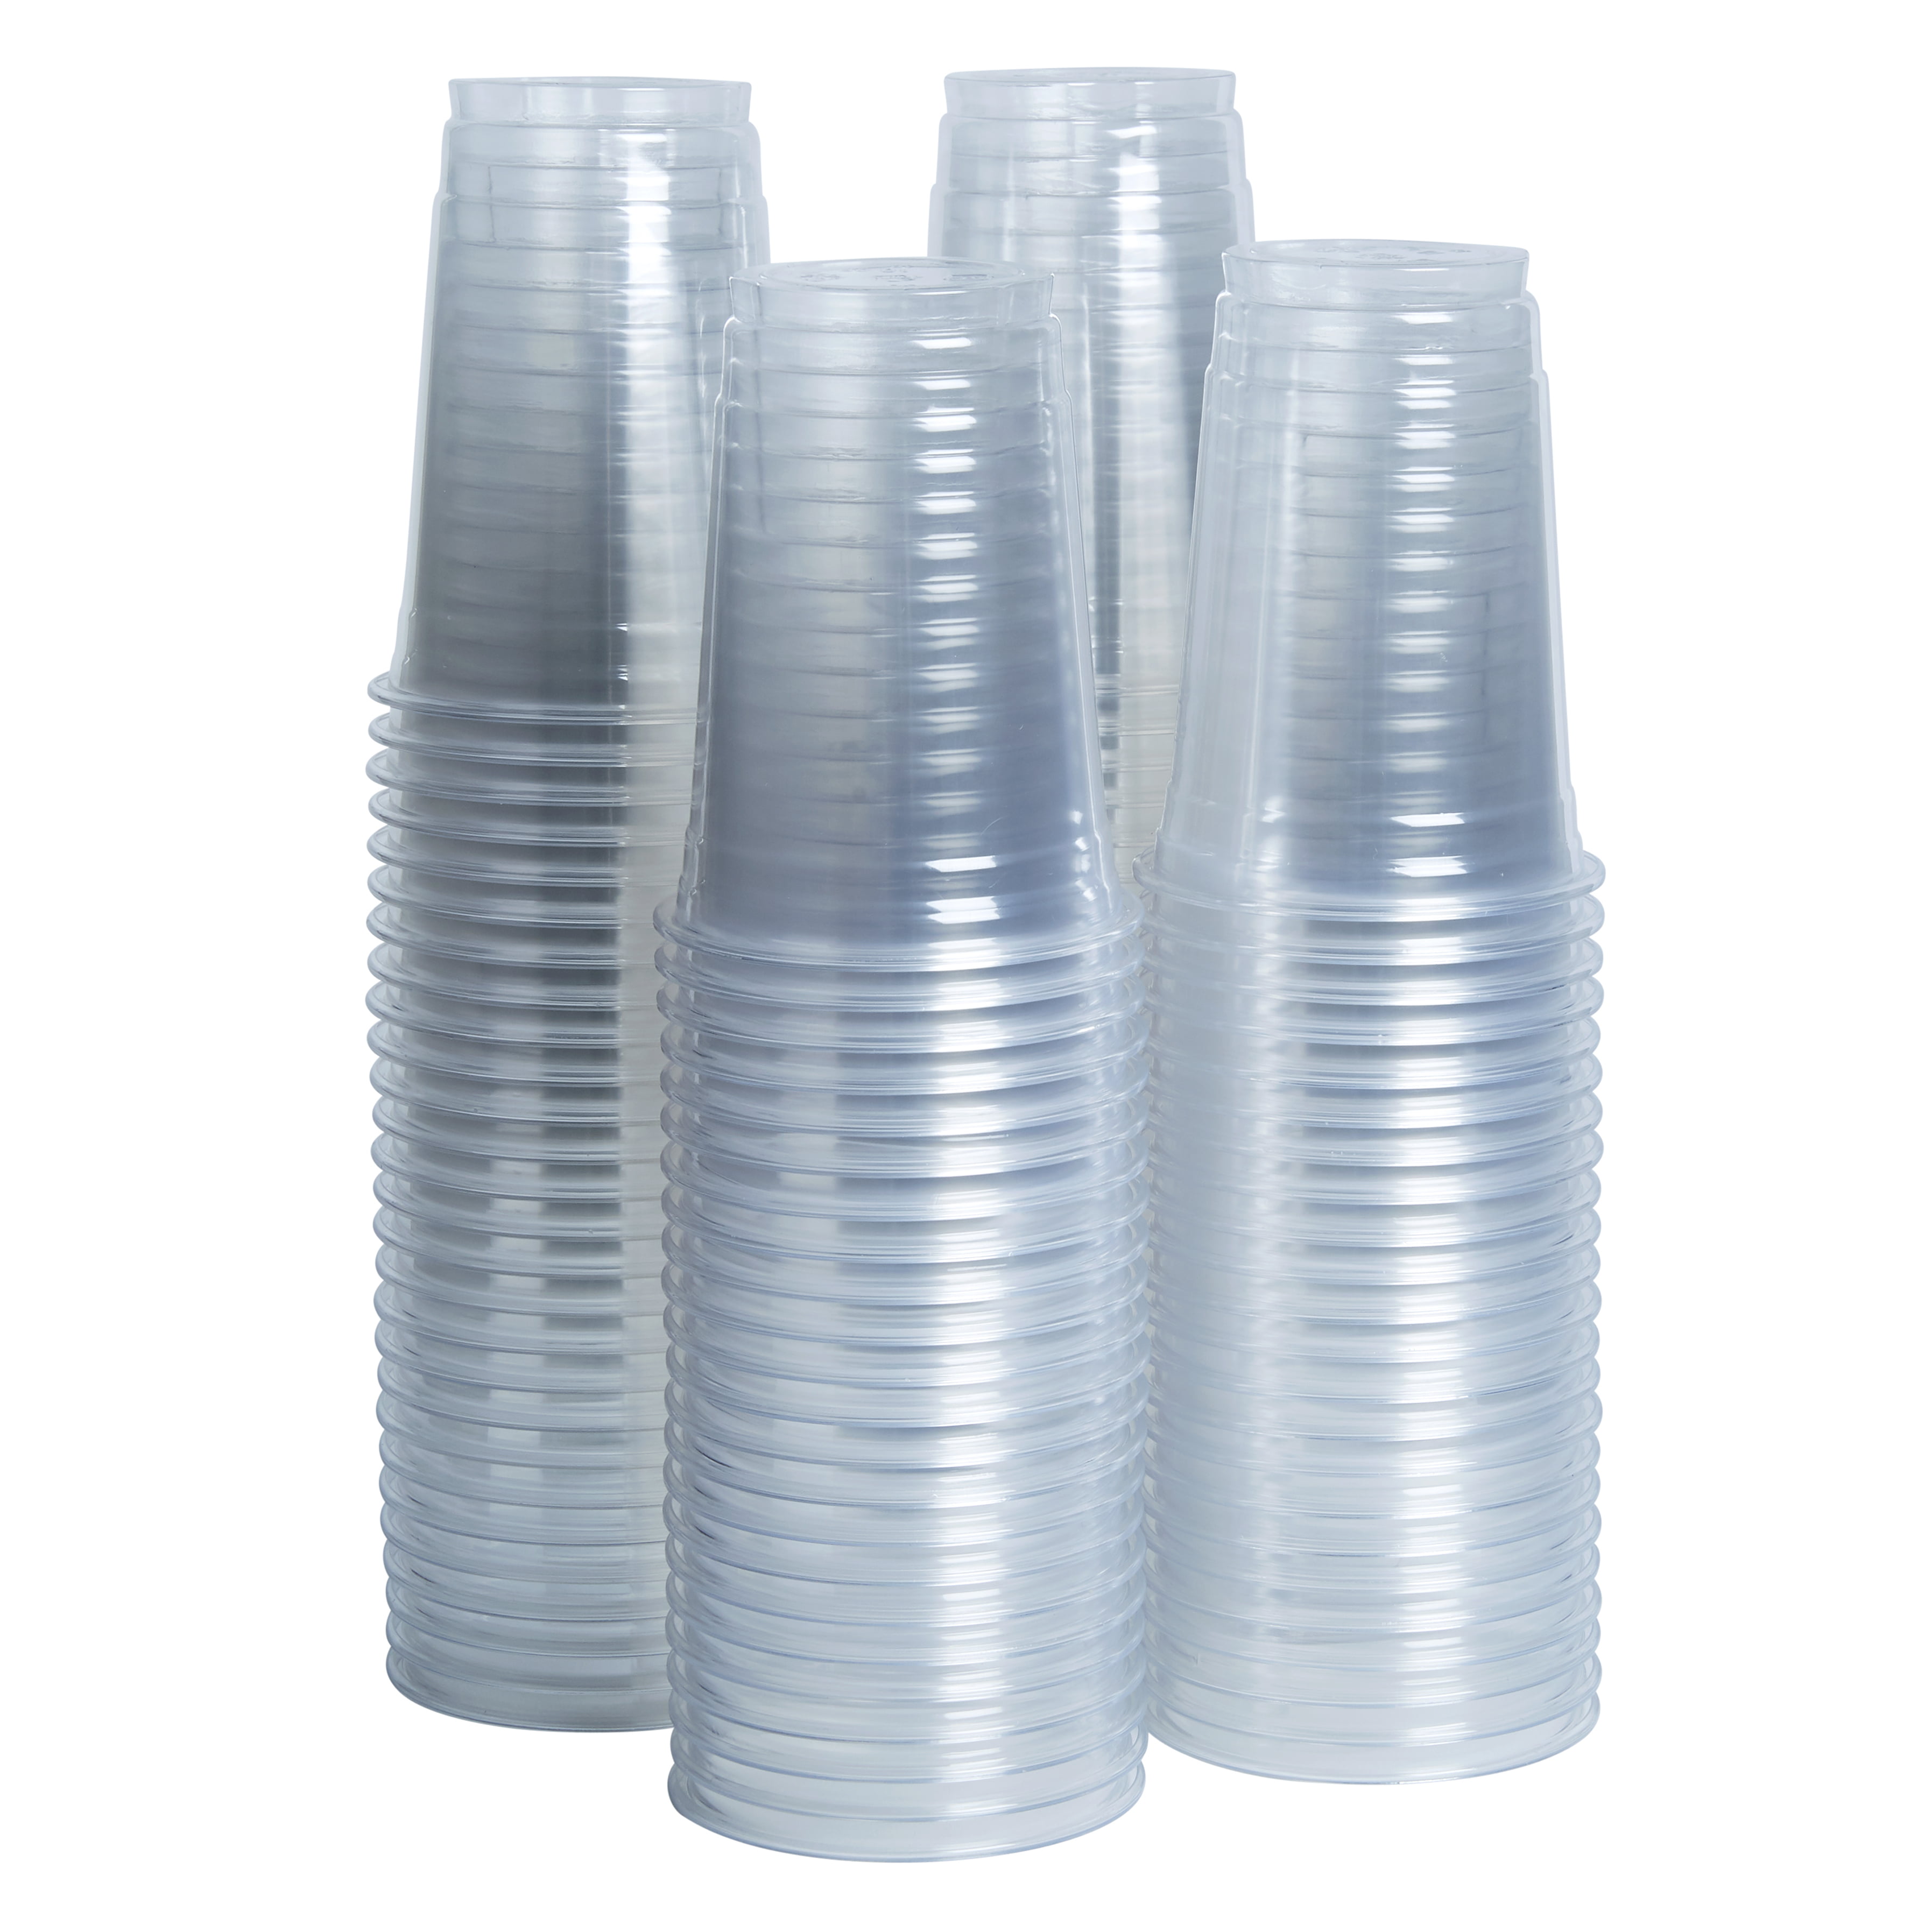 10 oz PET Plastic Cups With Lids 100 Sets